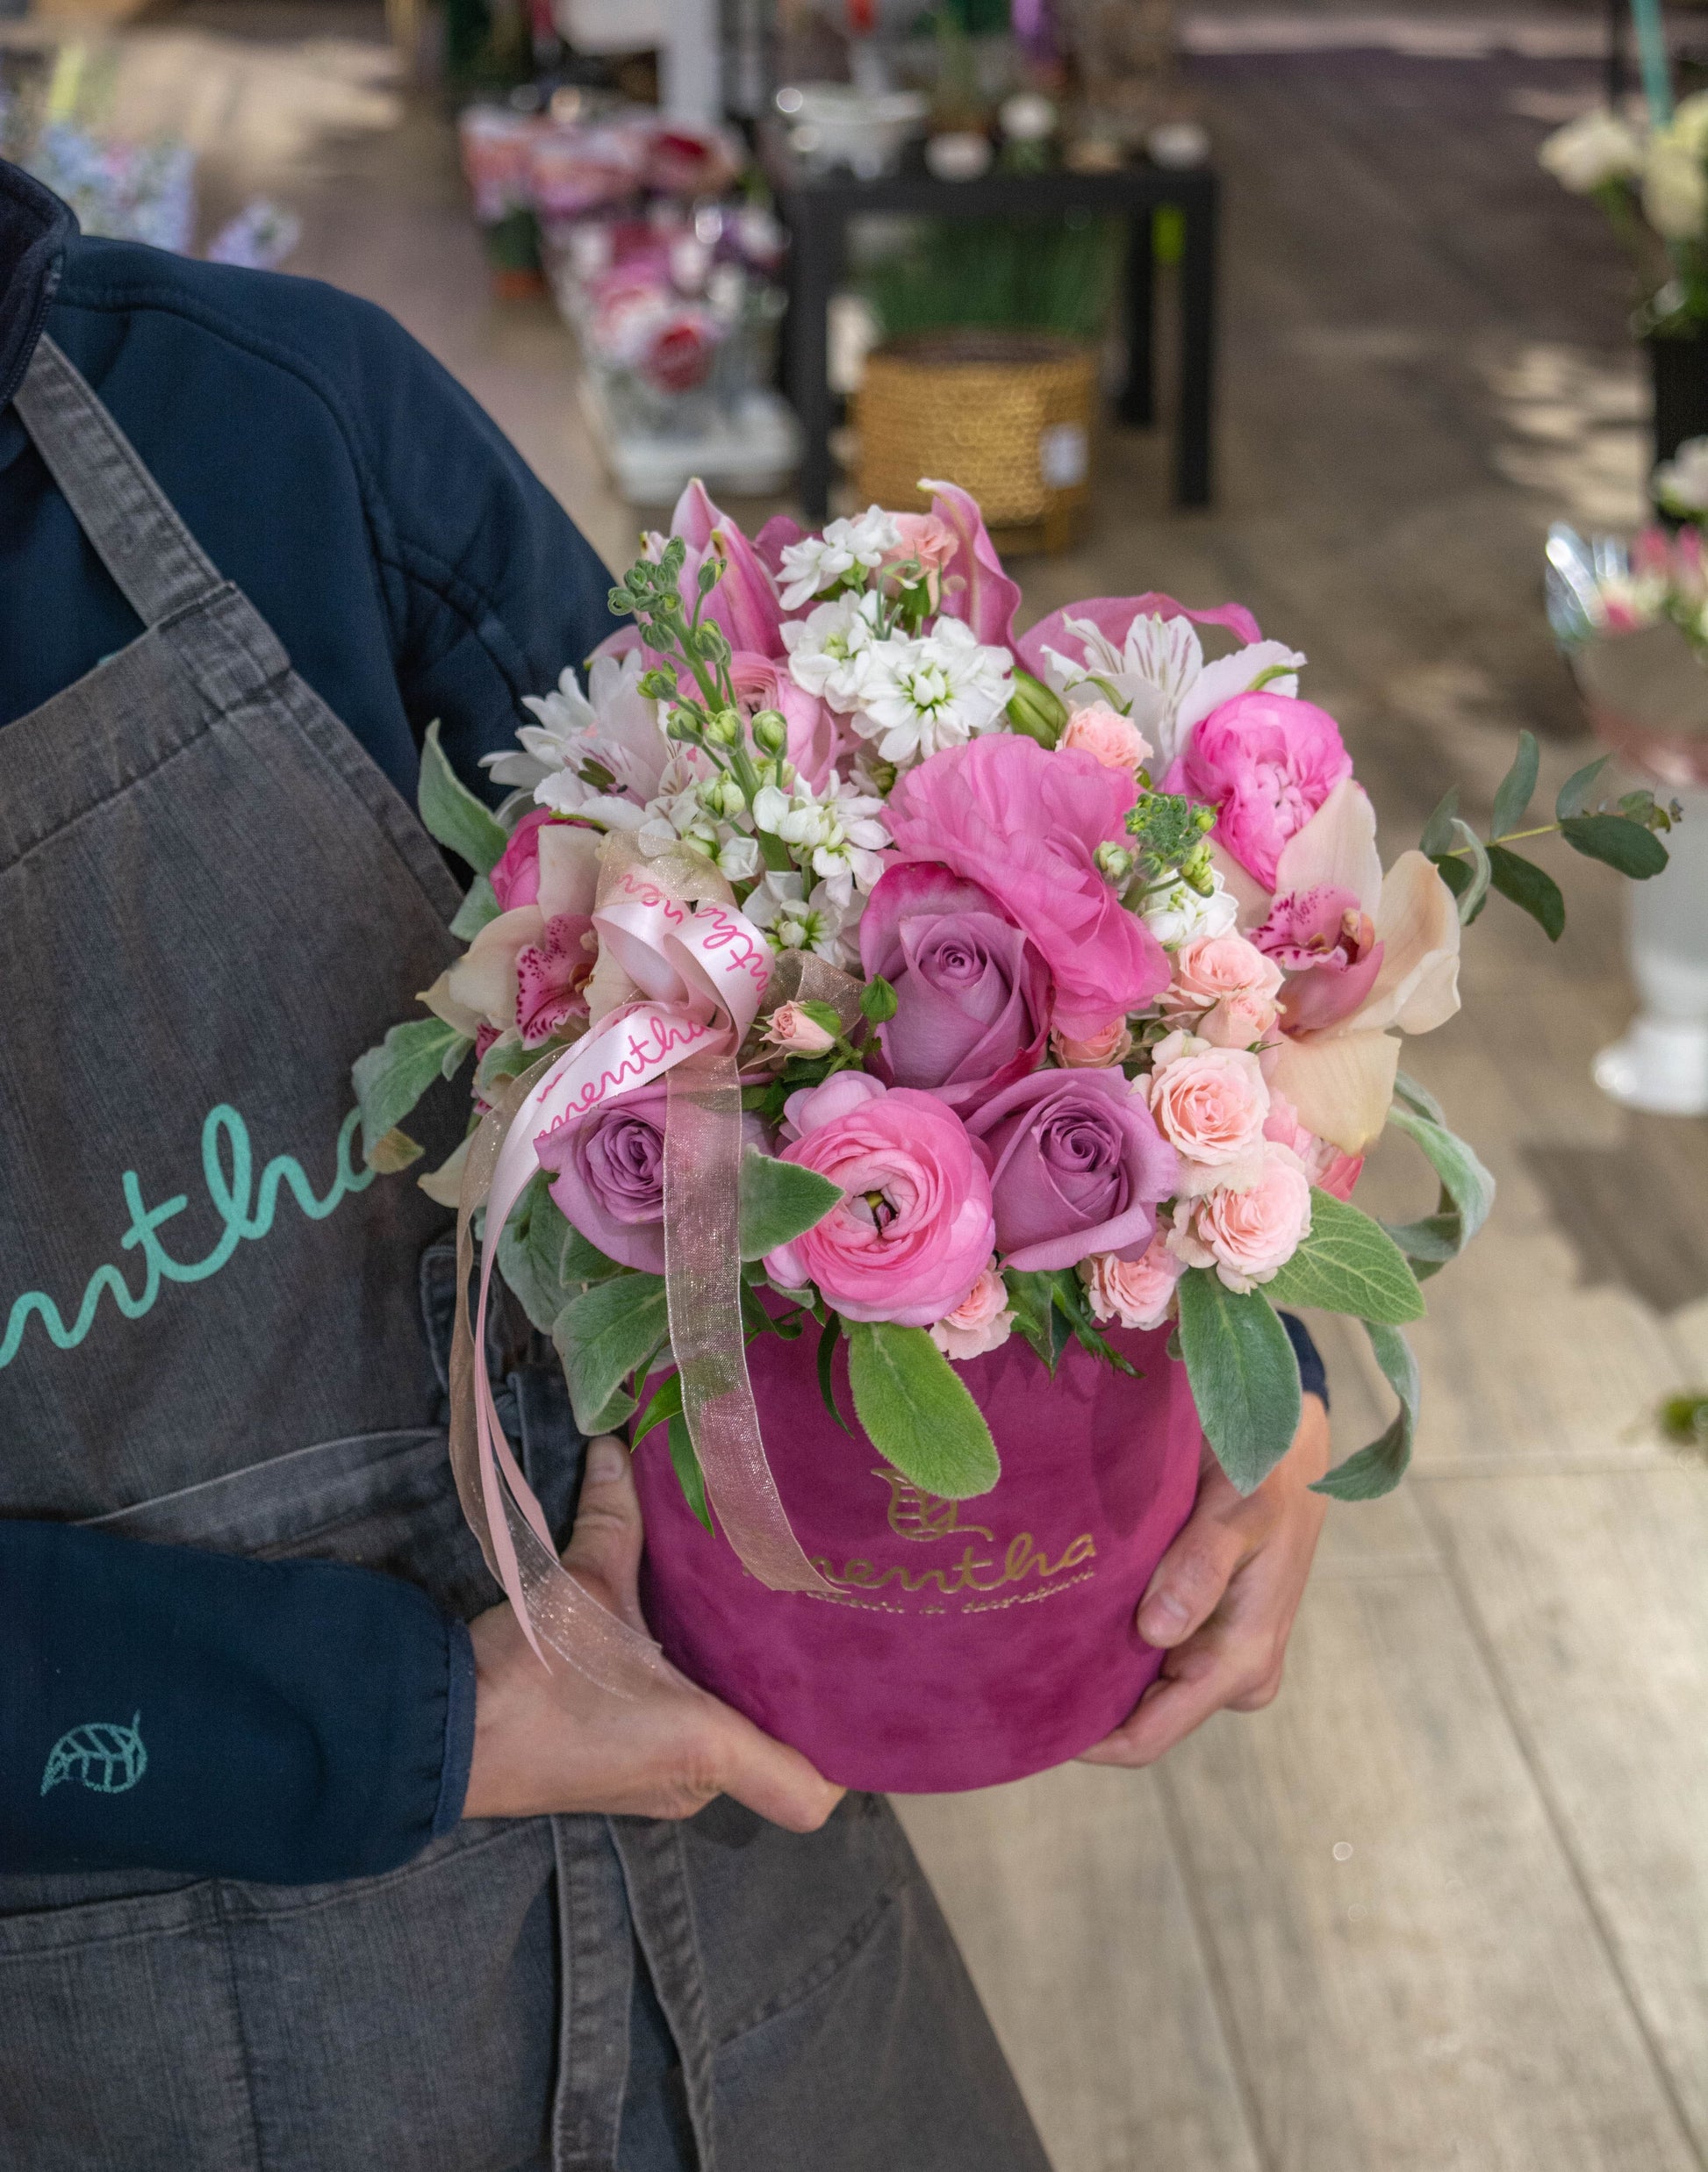 Flori parfumate în nuanțe de roz: imaginea a doua din colecție, ilustrând prospețimea și eleganța acestor flori delicate, cu livrare GRATUITĂ în Resita.